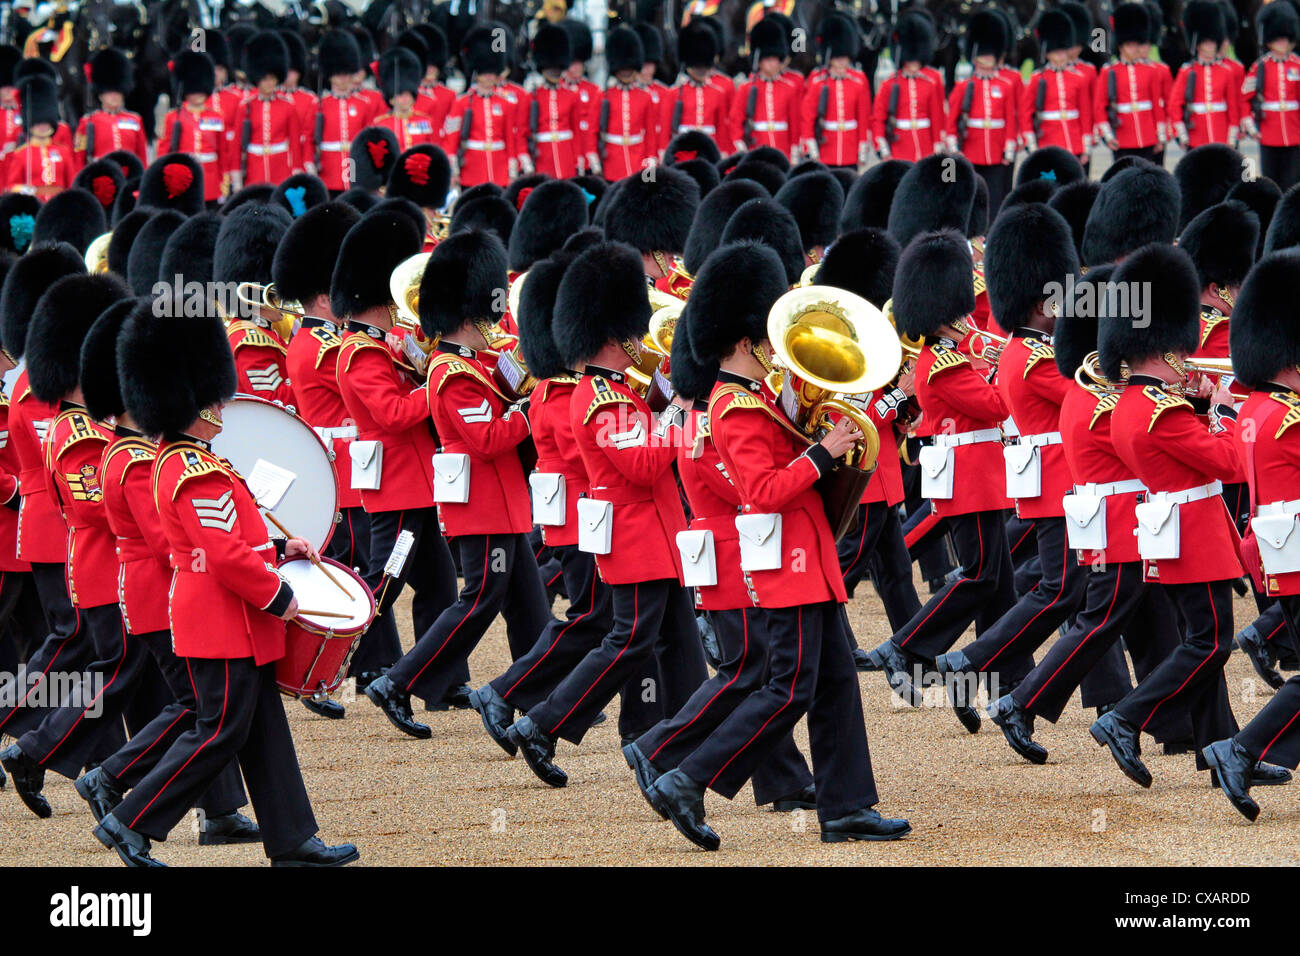 Soldaten beim Trooping die Farbe 2012, die Queen Geburtstag Parade, Horse Guards, Whitehall, London, England, Vereinigtes Königreich Stockfoto